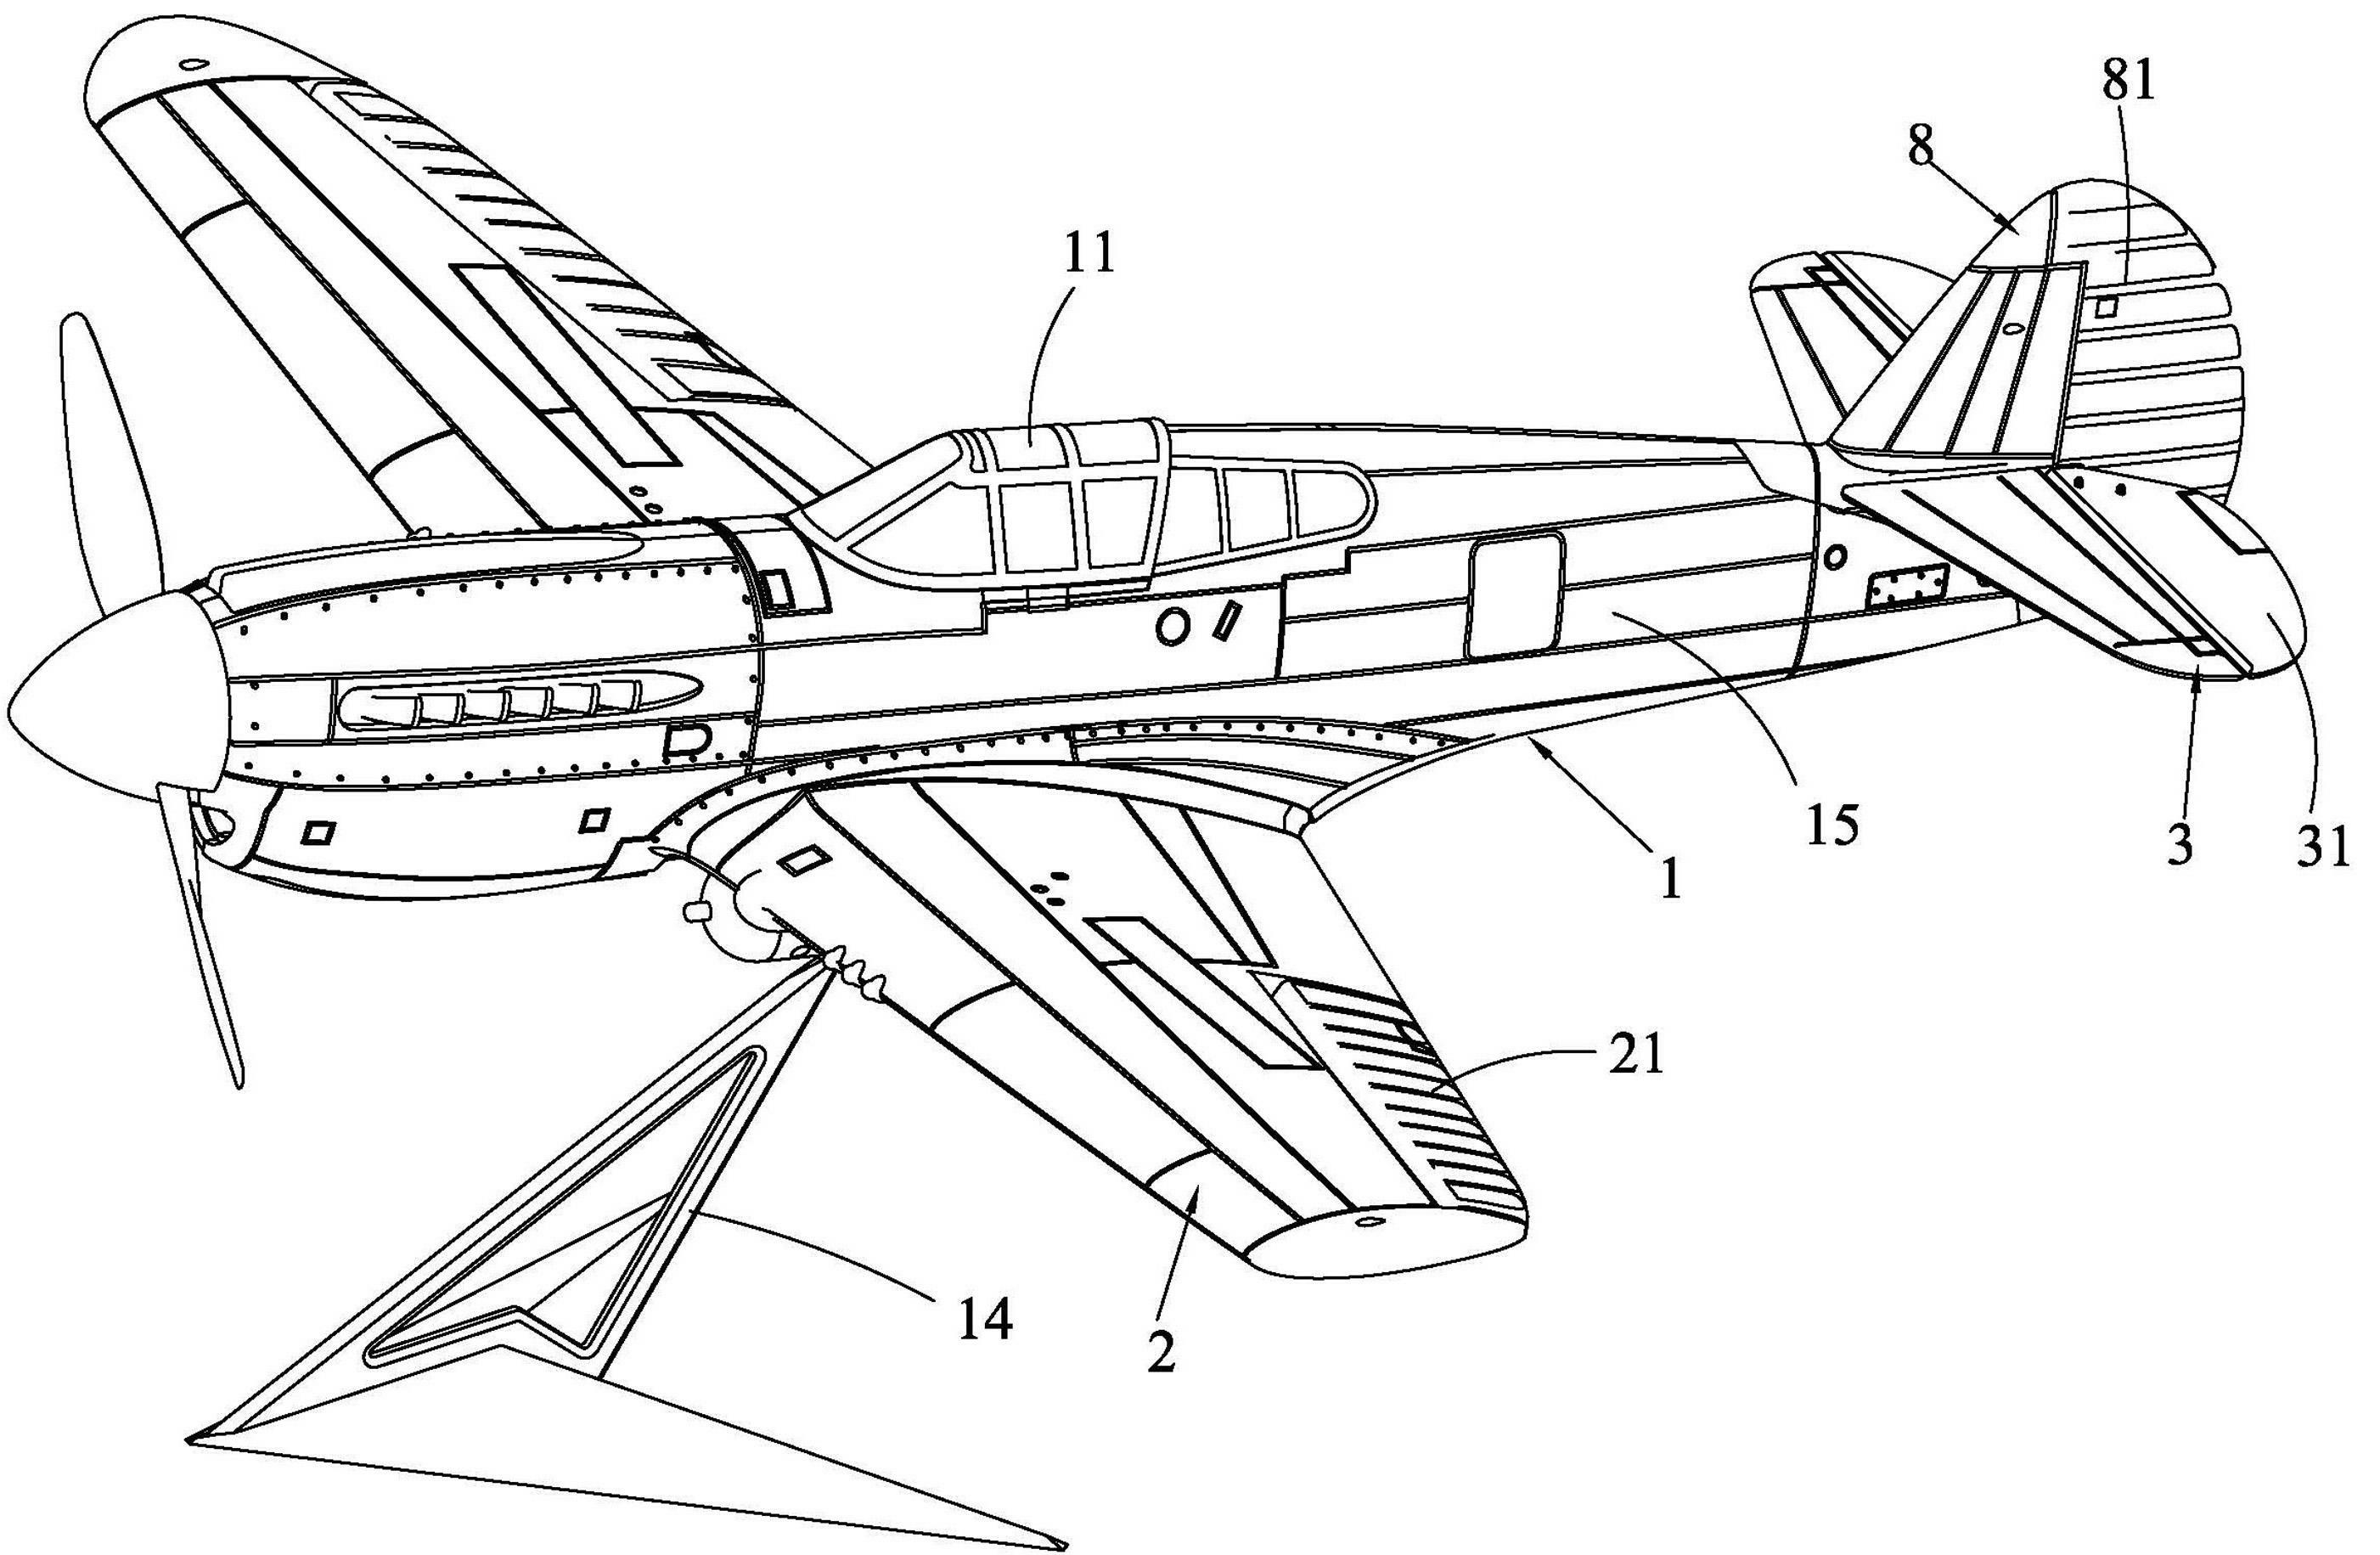 一种电动遥控固定翼飞机模型